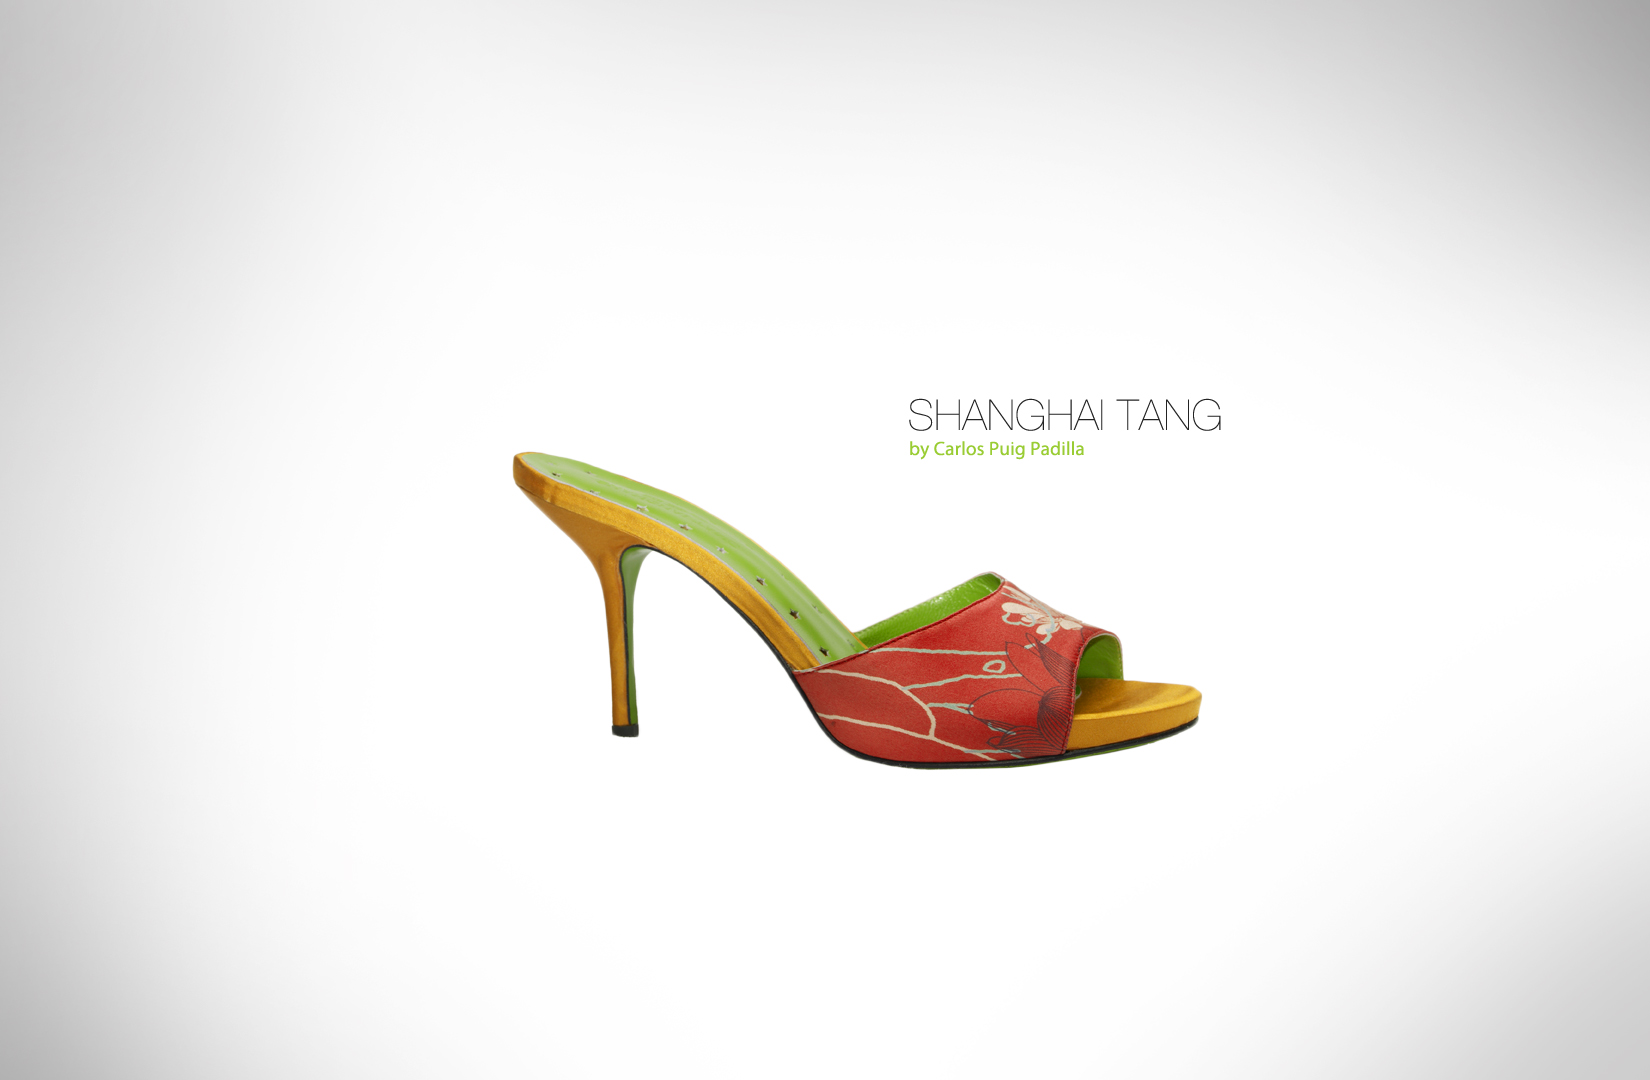 Shanghai Tang by Carlos Puig Padilla